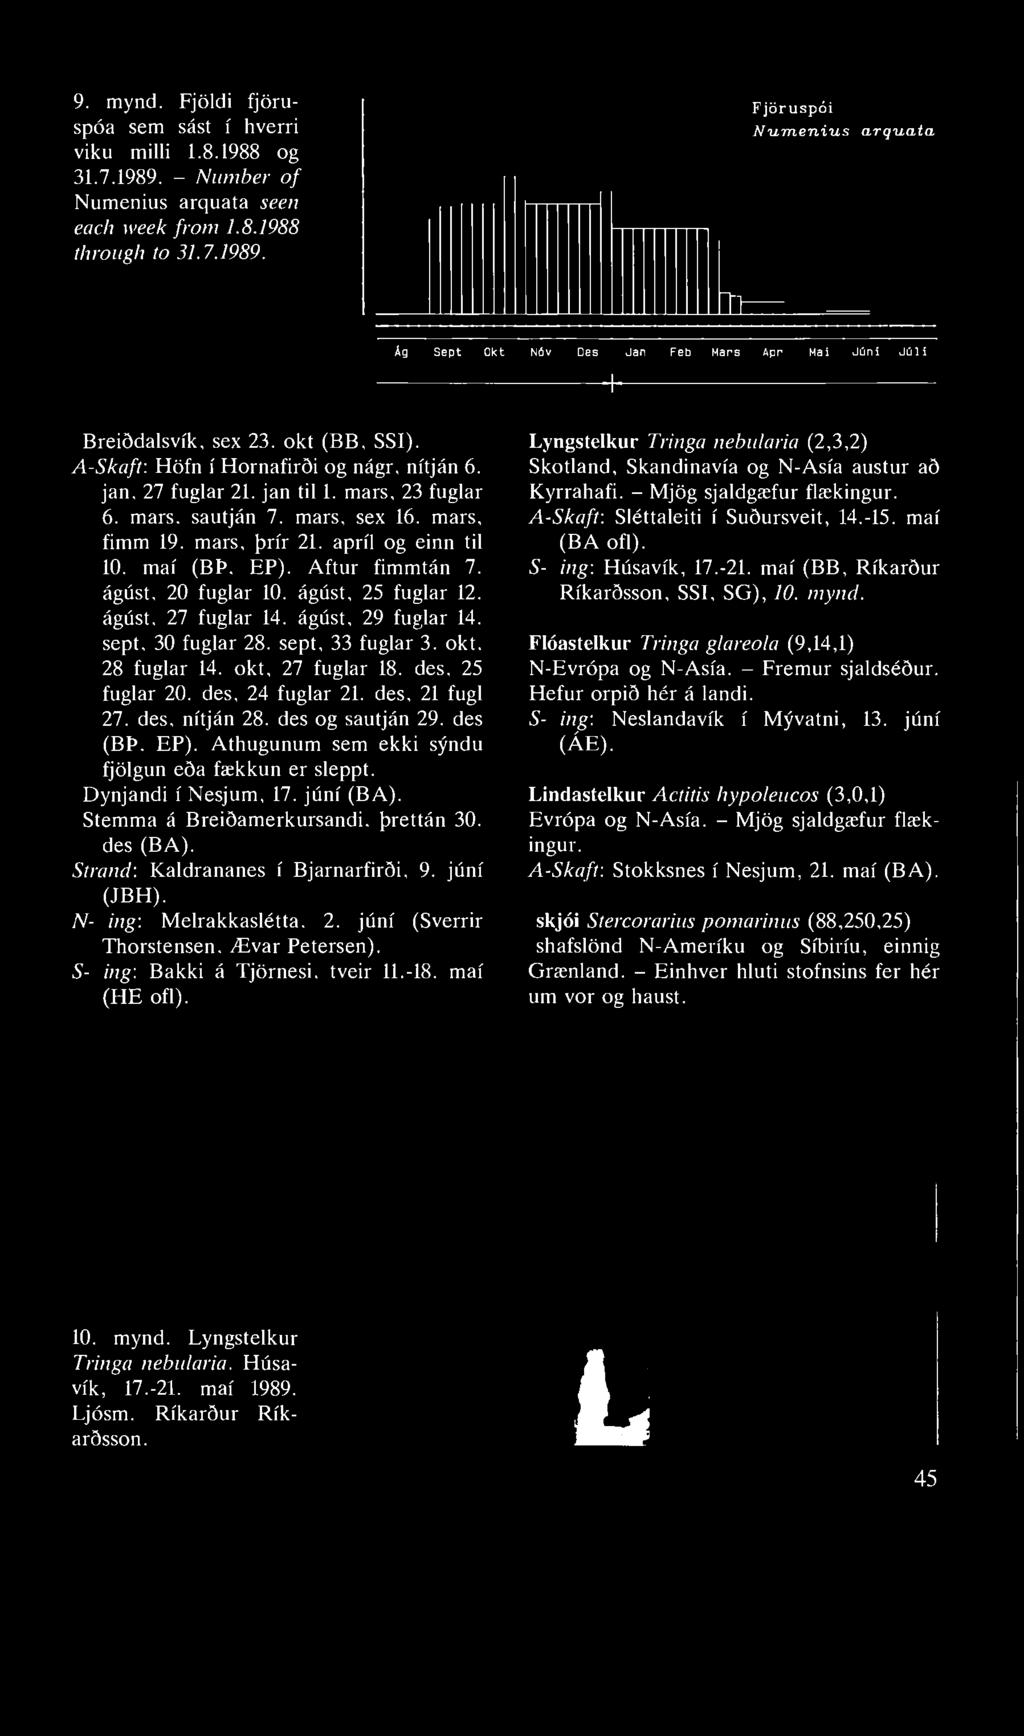 9. mynd. Fjöldi fjöruspóa sem sást í hverri viku milli 1.8.1988 og 31.7.1989. - Number of Numenius arquata seen each week from 1.8.1988 through to 31.7.1989. Fjöruspói Numenius arquata 2t Ág Sept Okt Nóv Des Jan Feb Mars Apr Maí Júní Júlí + Breiðdalsvík, sex 23.